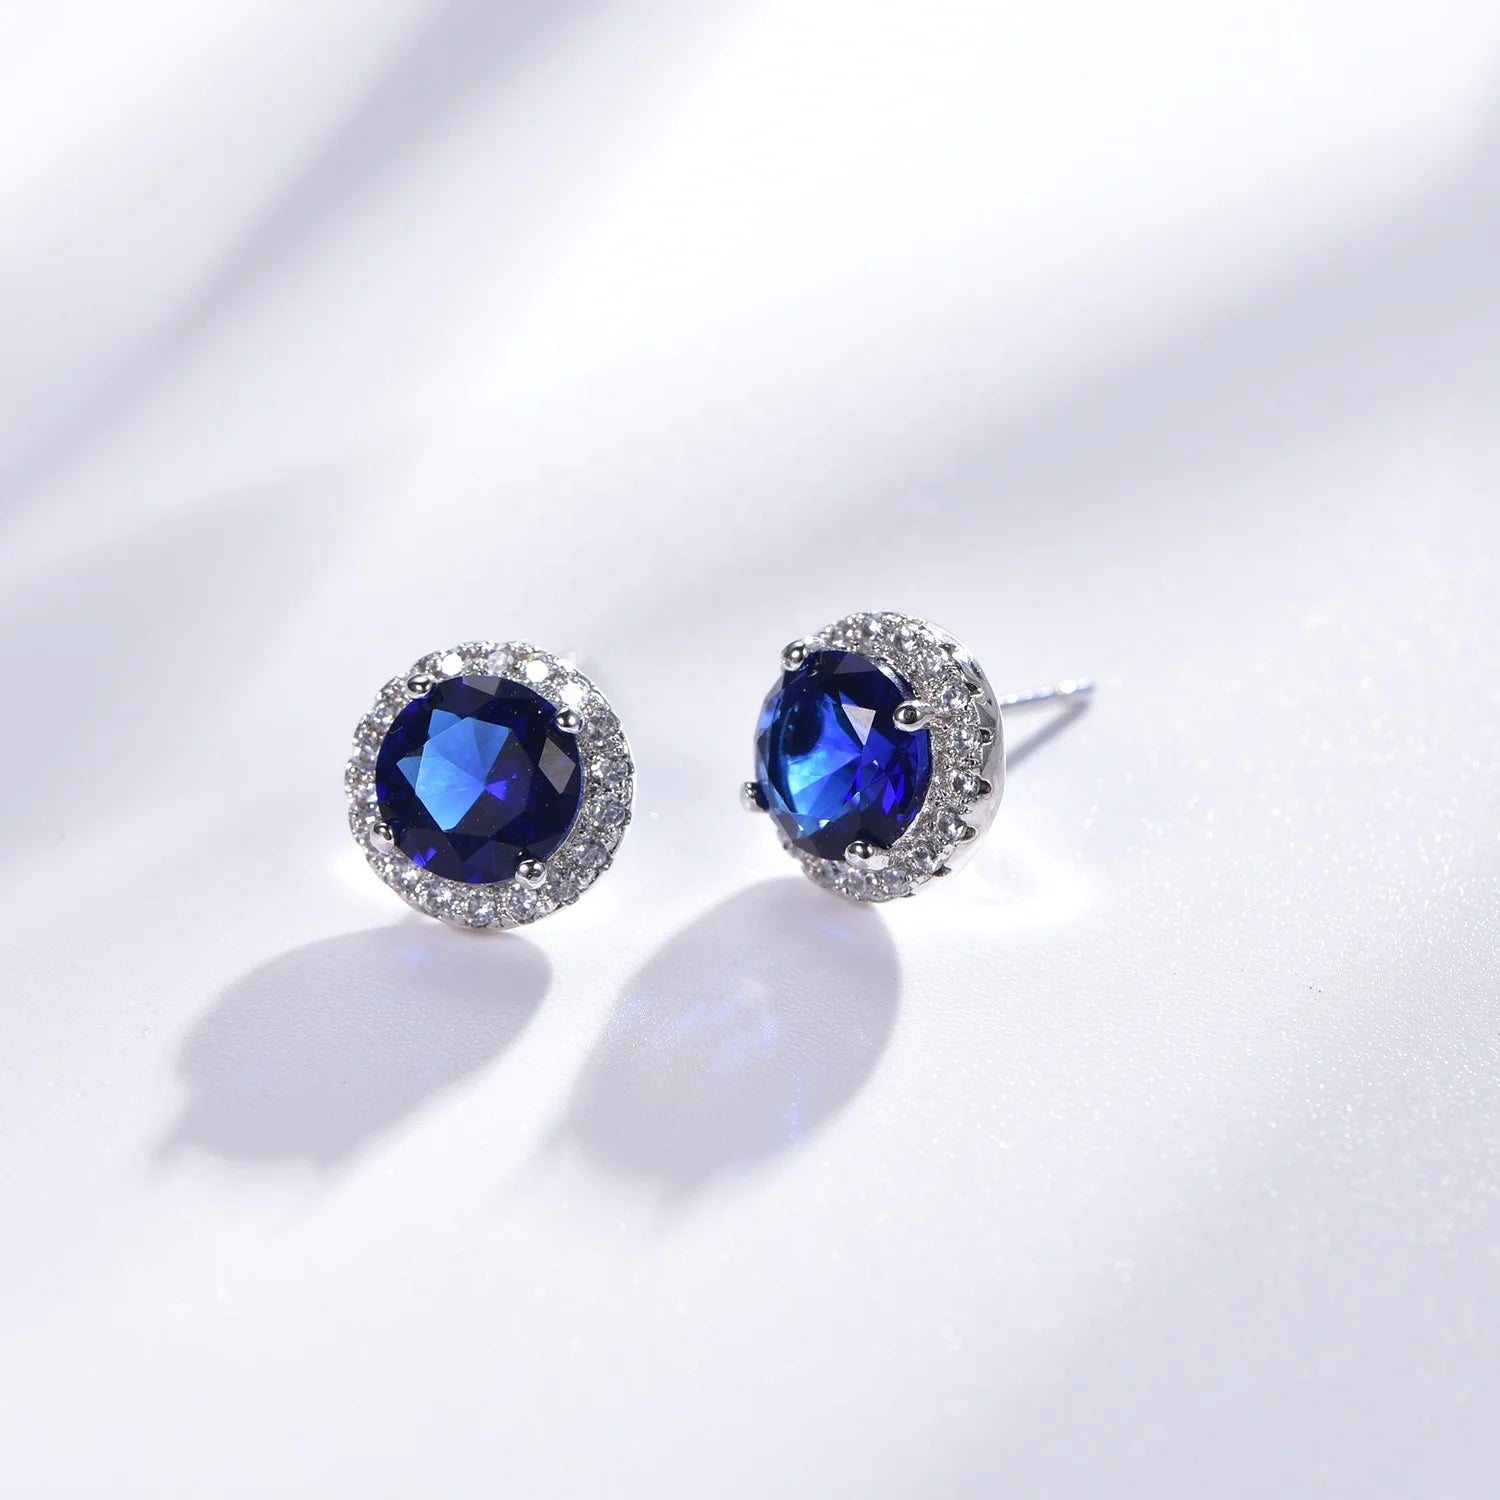 Sterling silver earrings 925 stud earrings dark blue glass gem AAA CZ moissanite earrings Kirin Jewelry